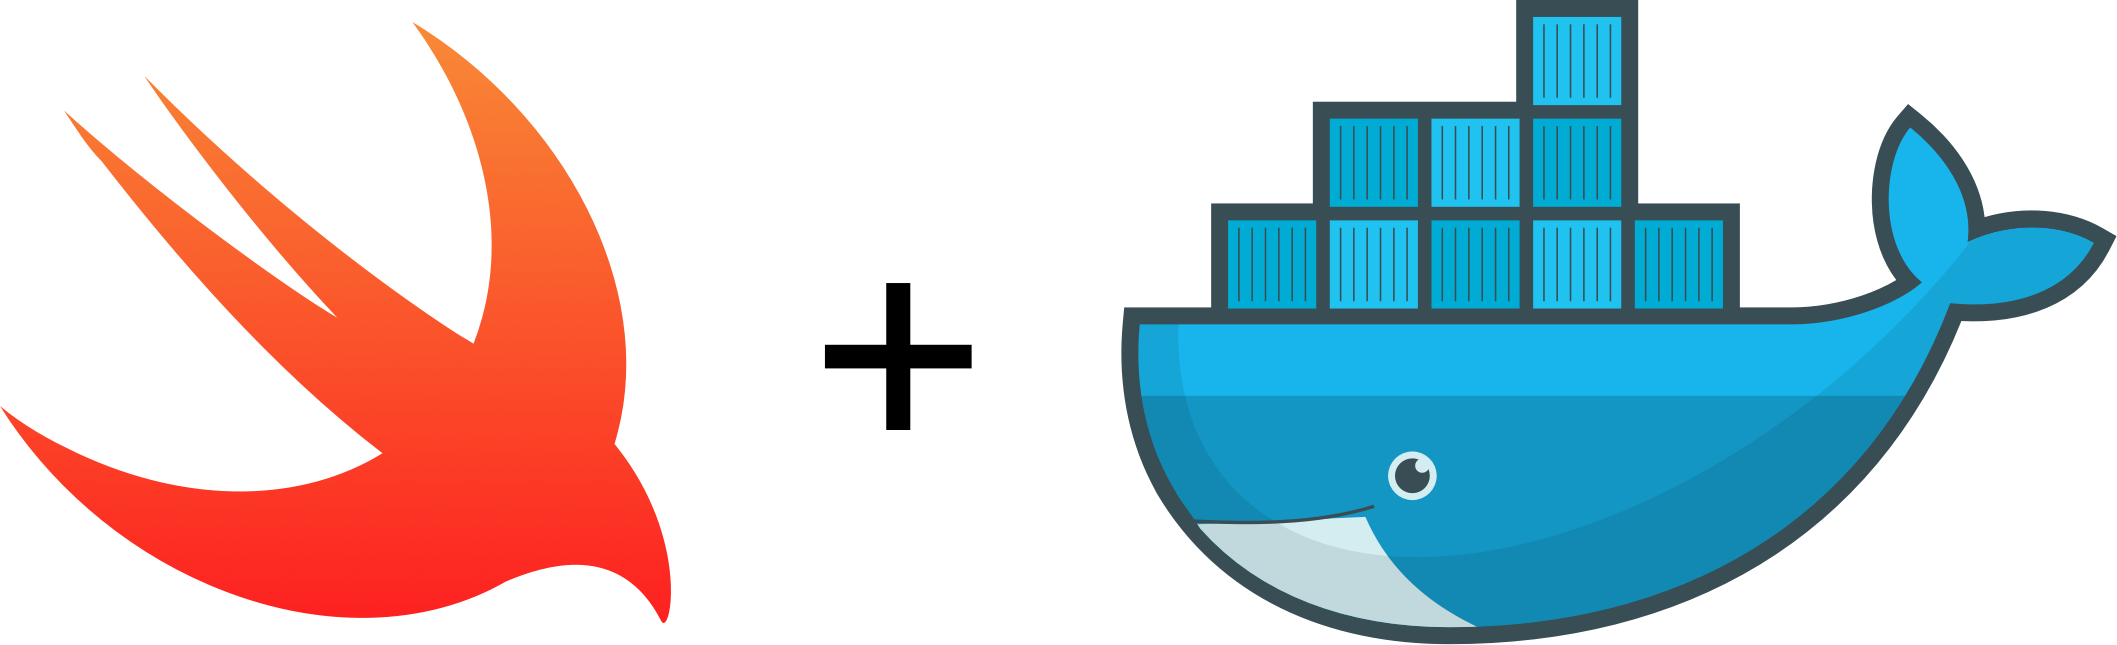 Swift Docker - Docker Logo (2117x645)